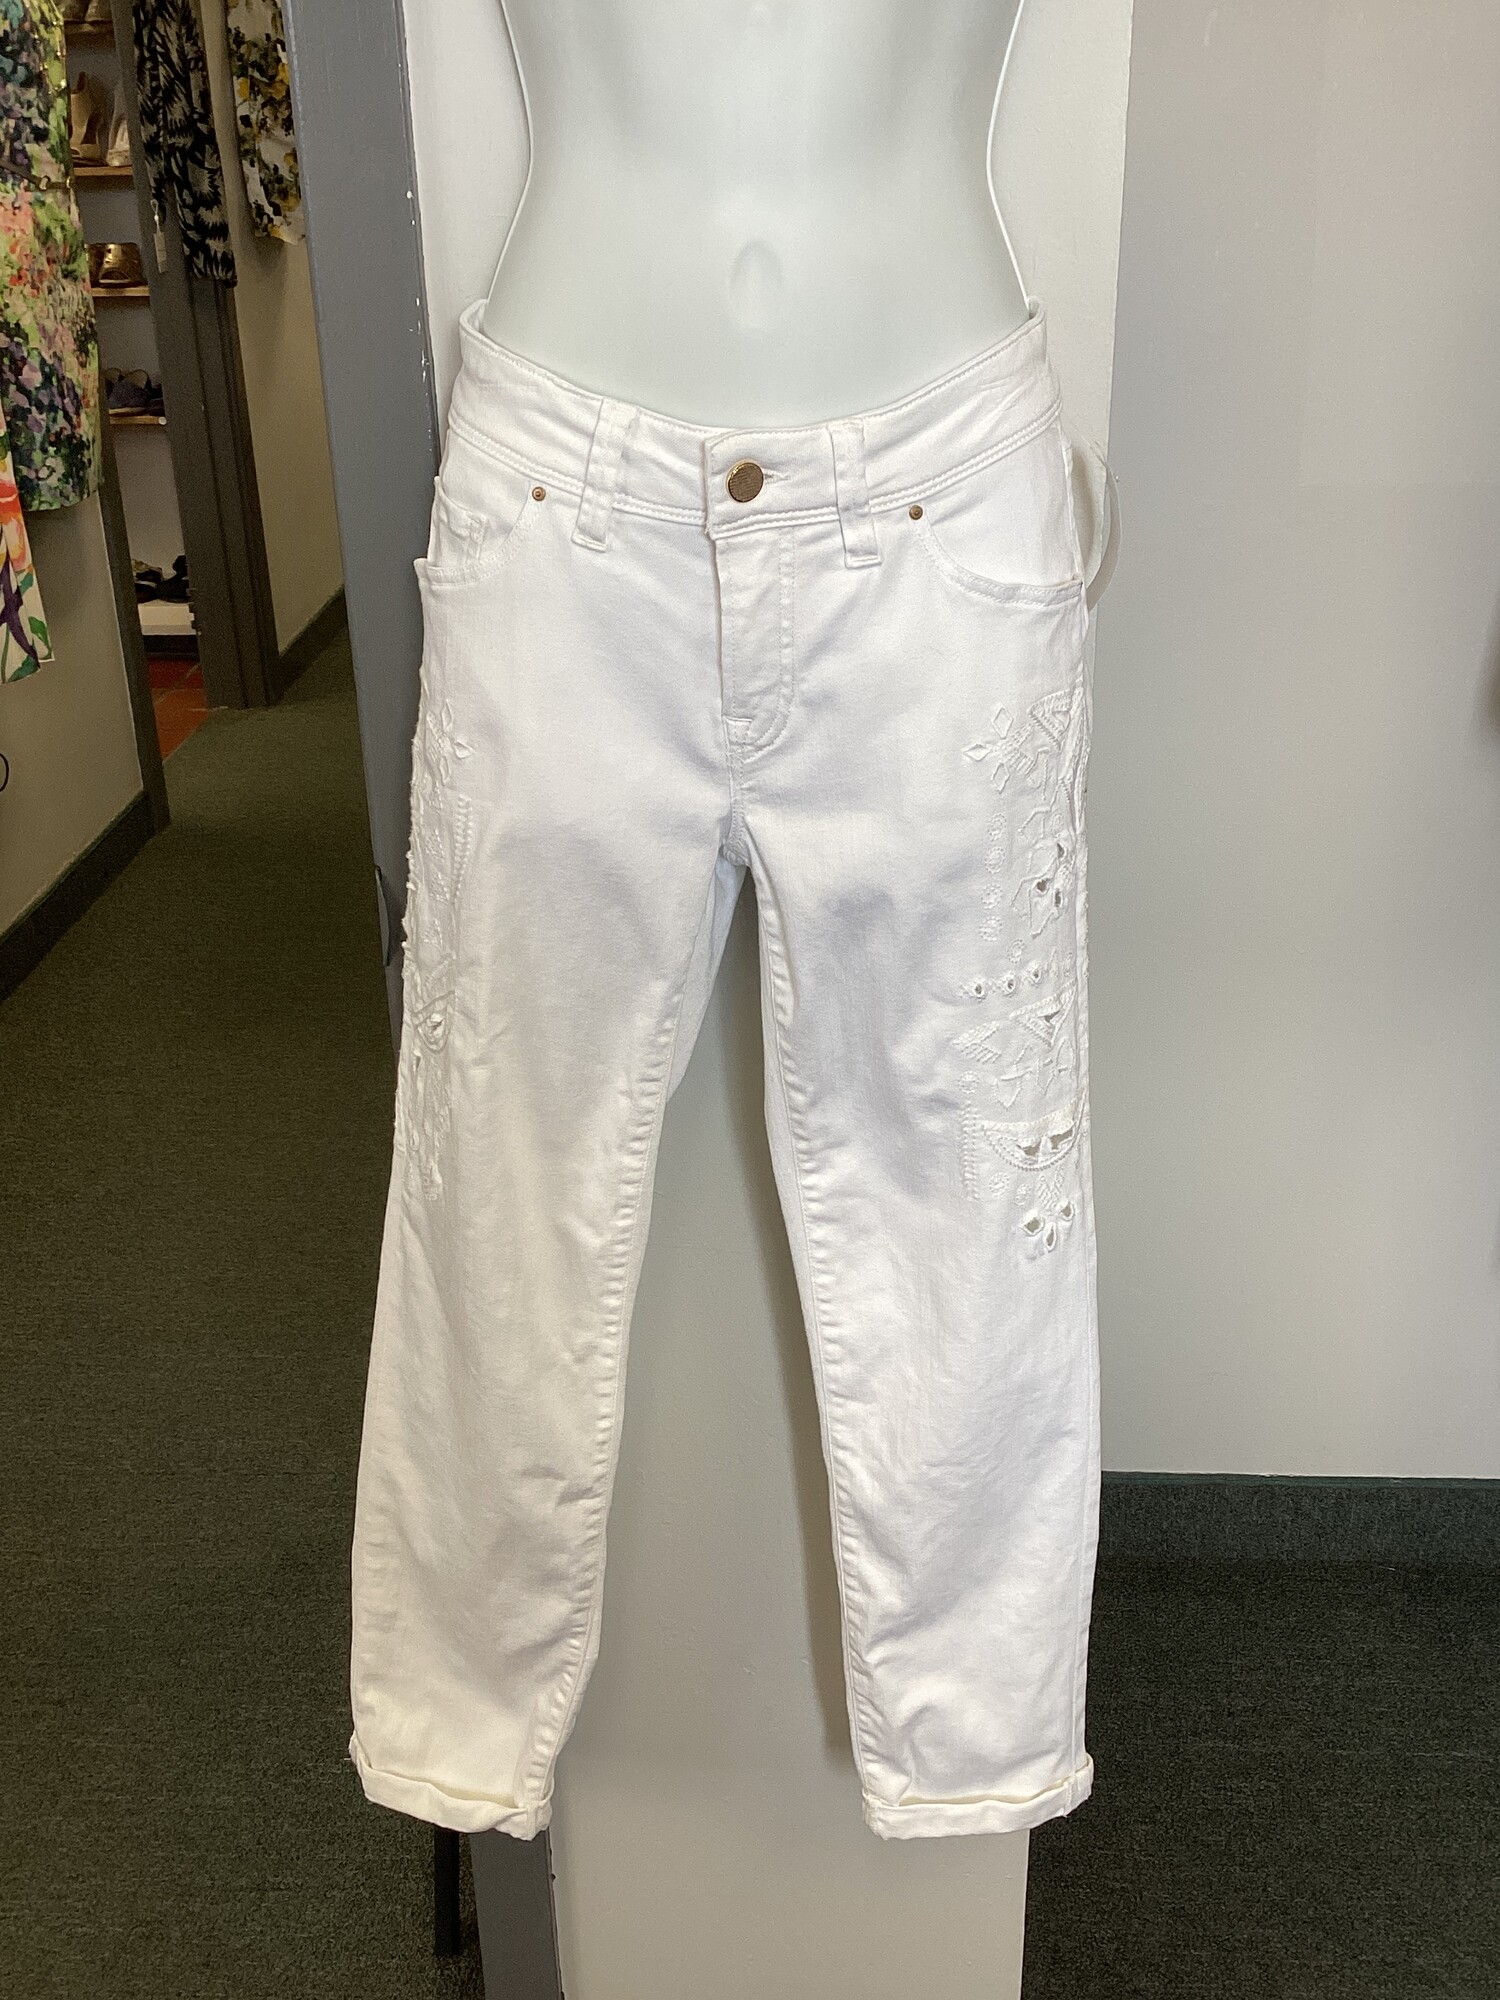 Jeans W Cutouts, White, Size: 4 Sm